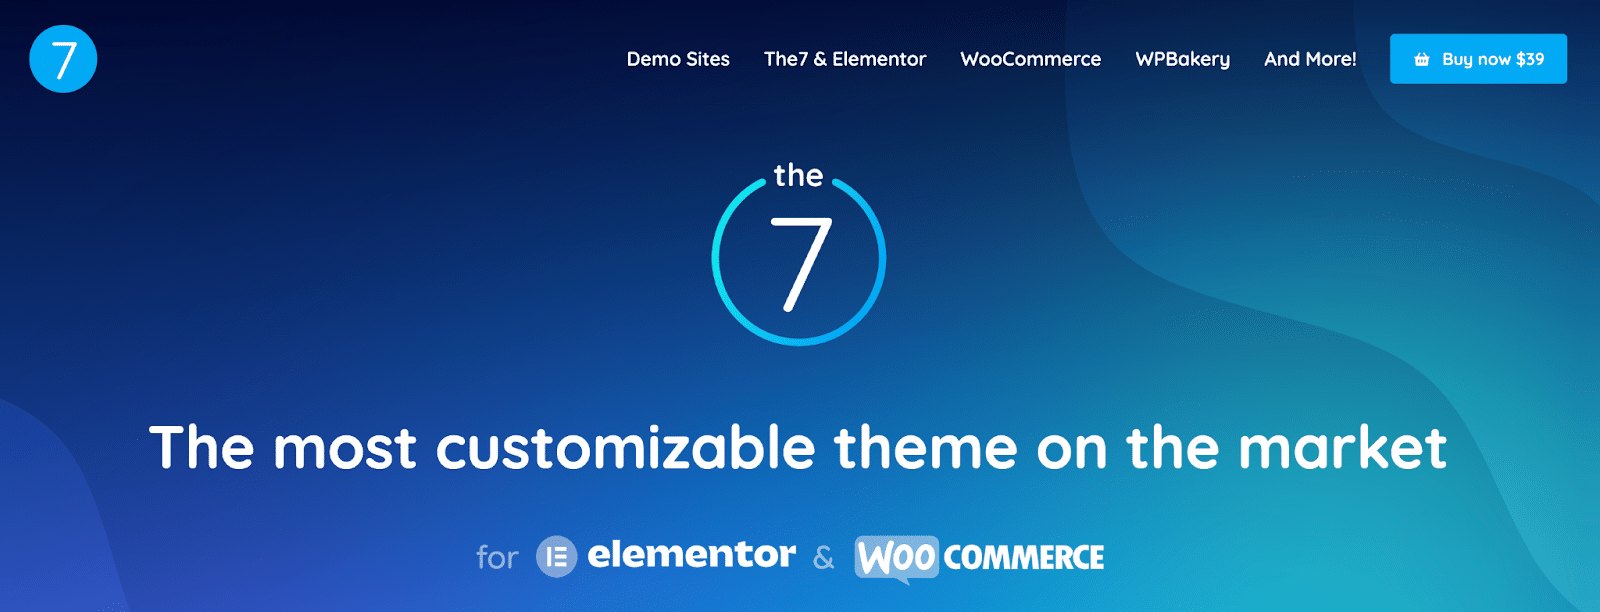 WordPress Multipurpose Themes For Elementor